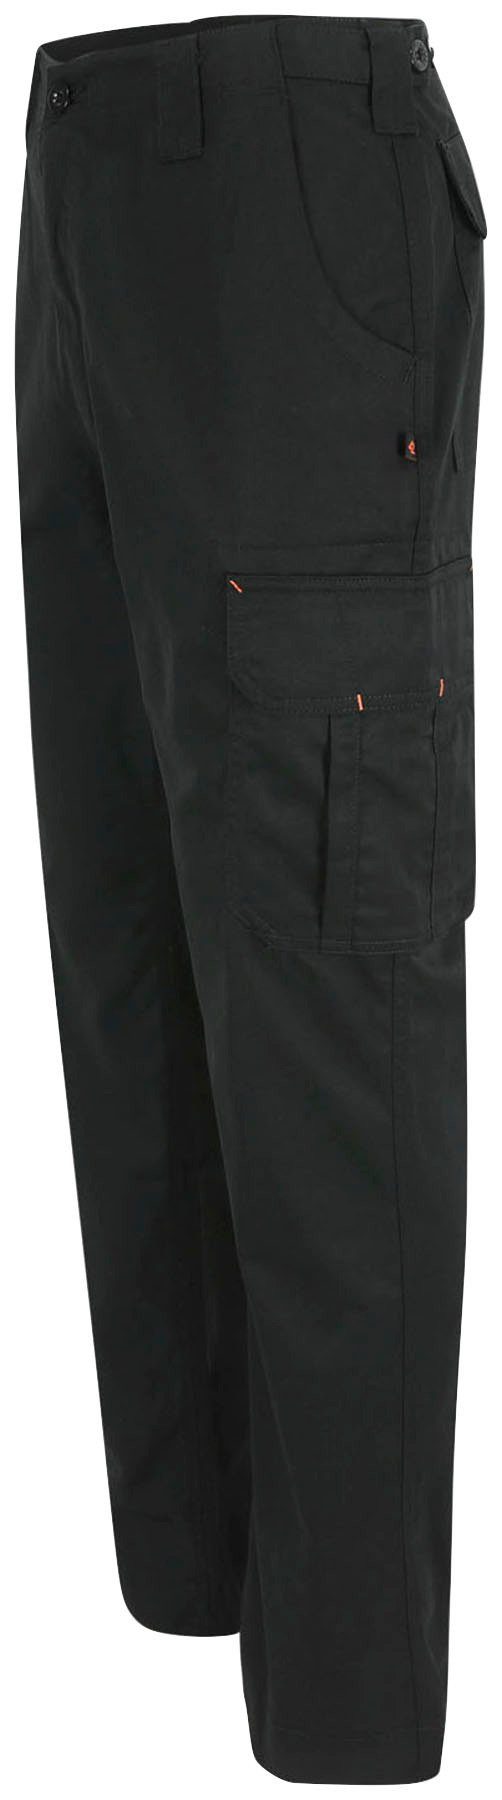 Herock Arbeitshose Thor Hose Wasserabweisend, schwarz viele 7 leicht, Farben Bund, Taschen, einstellbarer